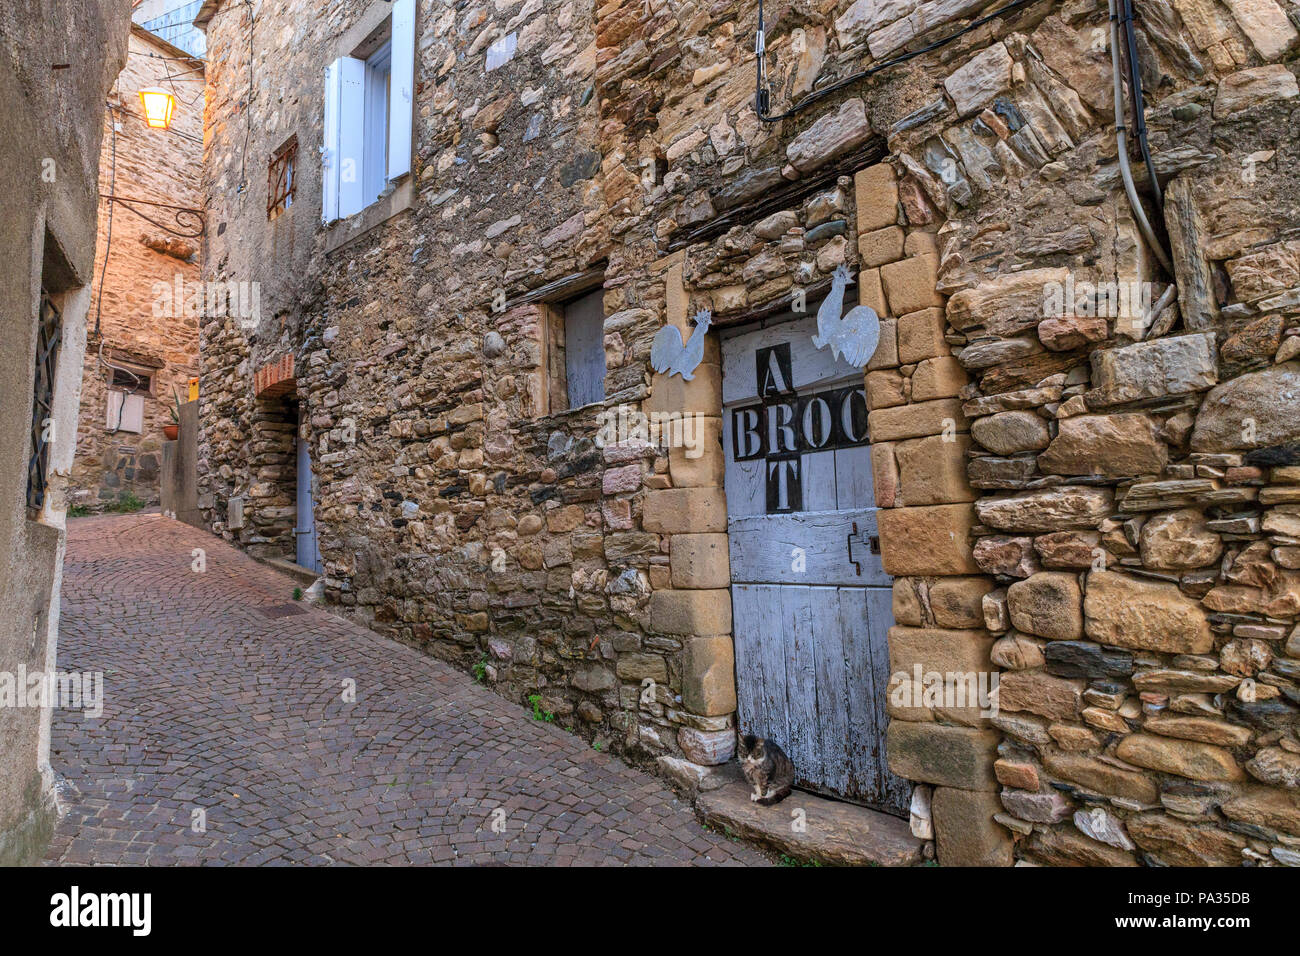 Frankreich, Herault, Haut Languedoc Regionale Naturpark, Olargues, beschriftet Les Plus beaux villages de France (Schönste Dörfer Frankreichs), R Stockfoto